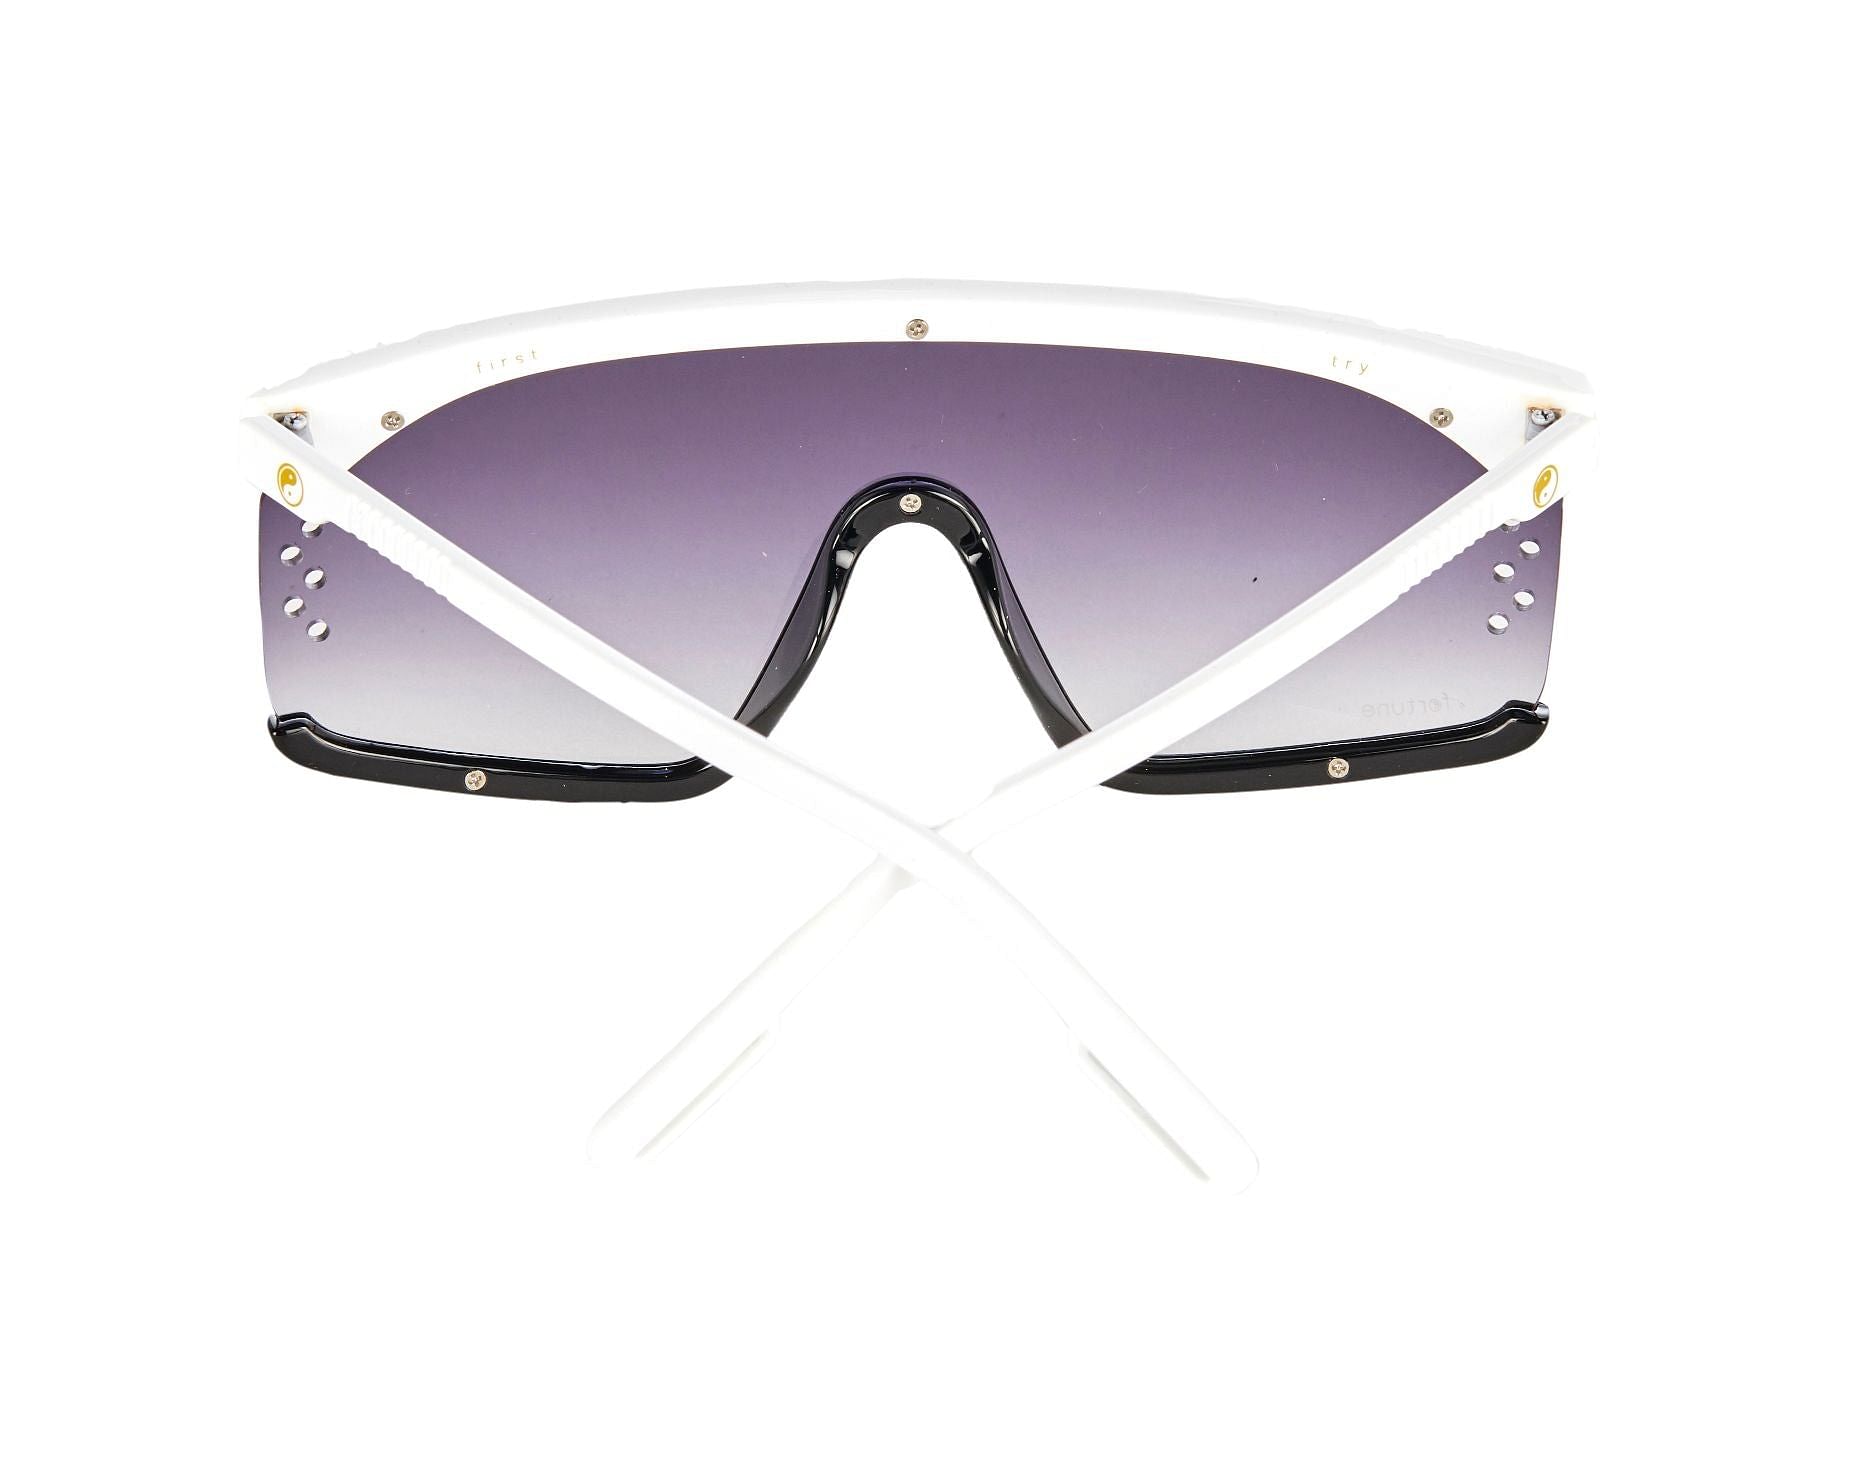 Louis Vuitton Nz Sunglasses For Women's